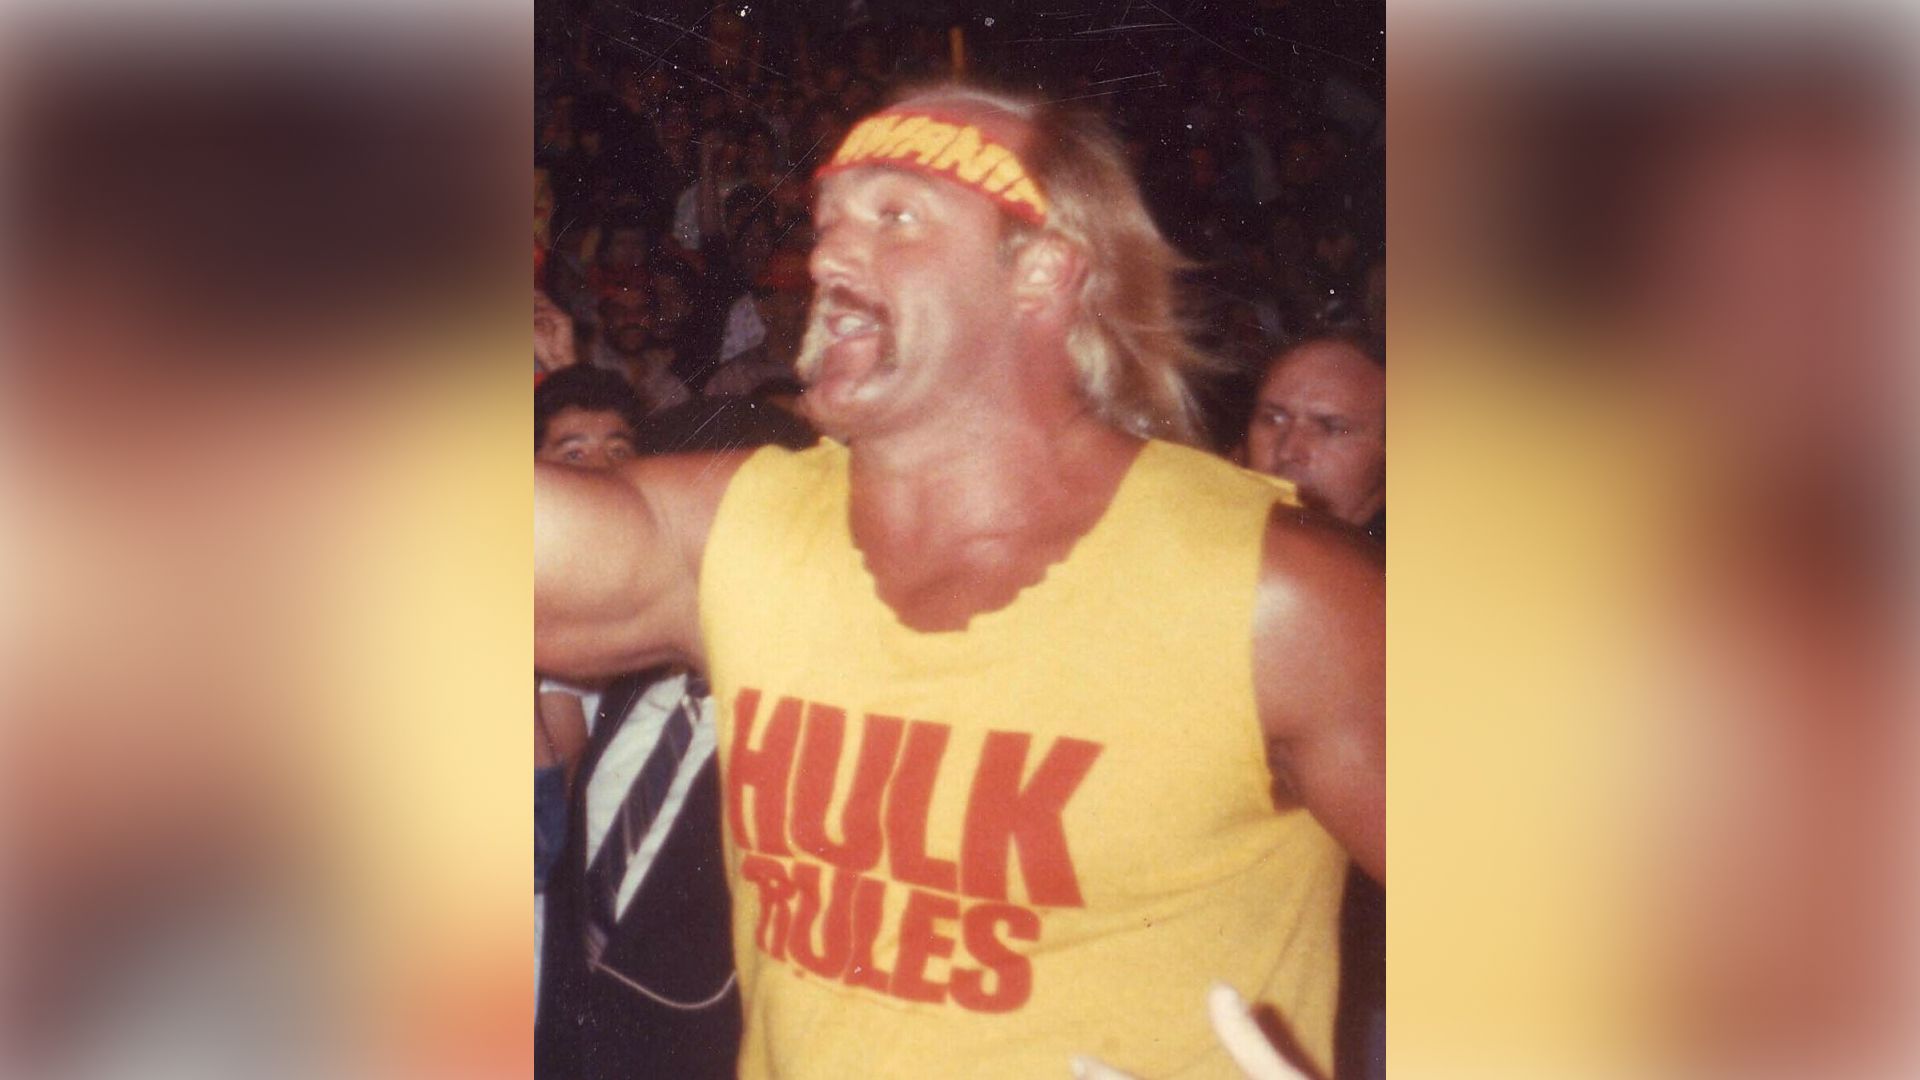 Hulk Hogan as a young man